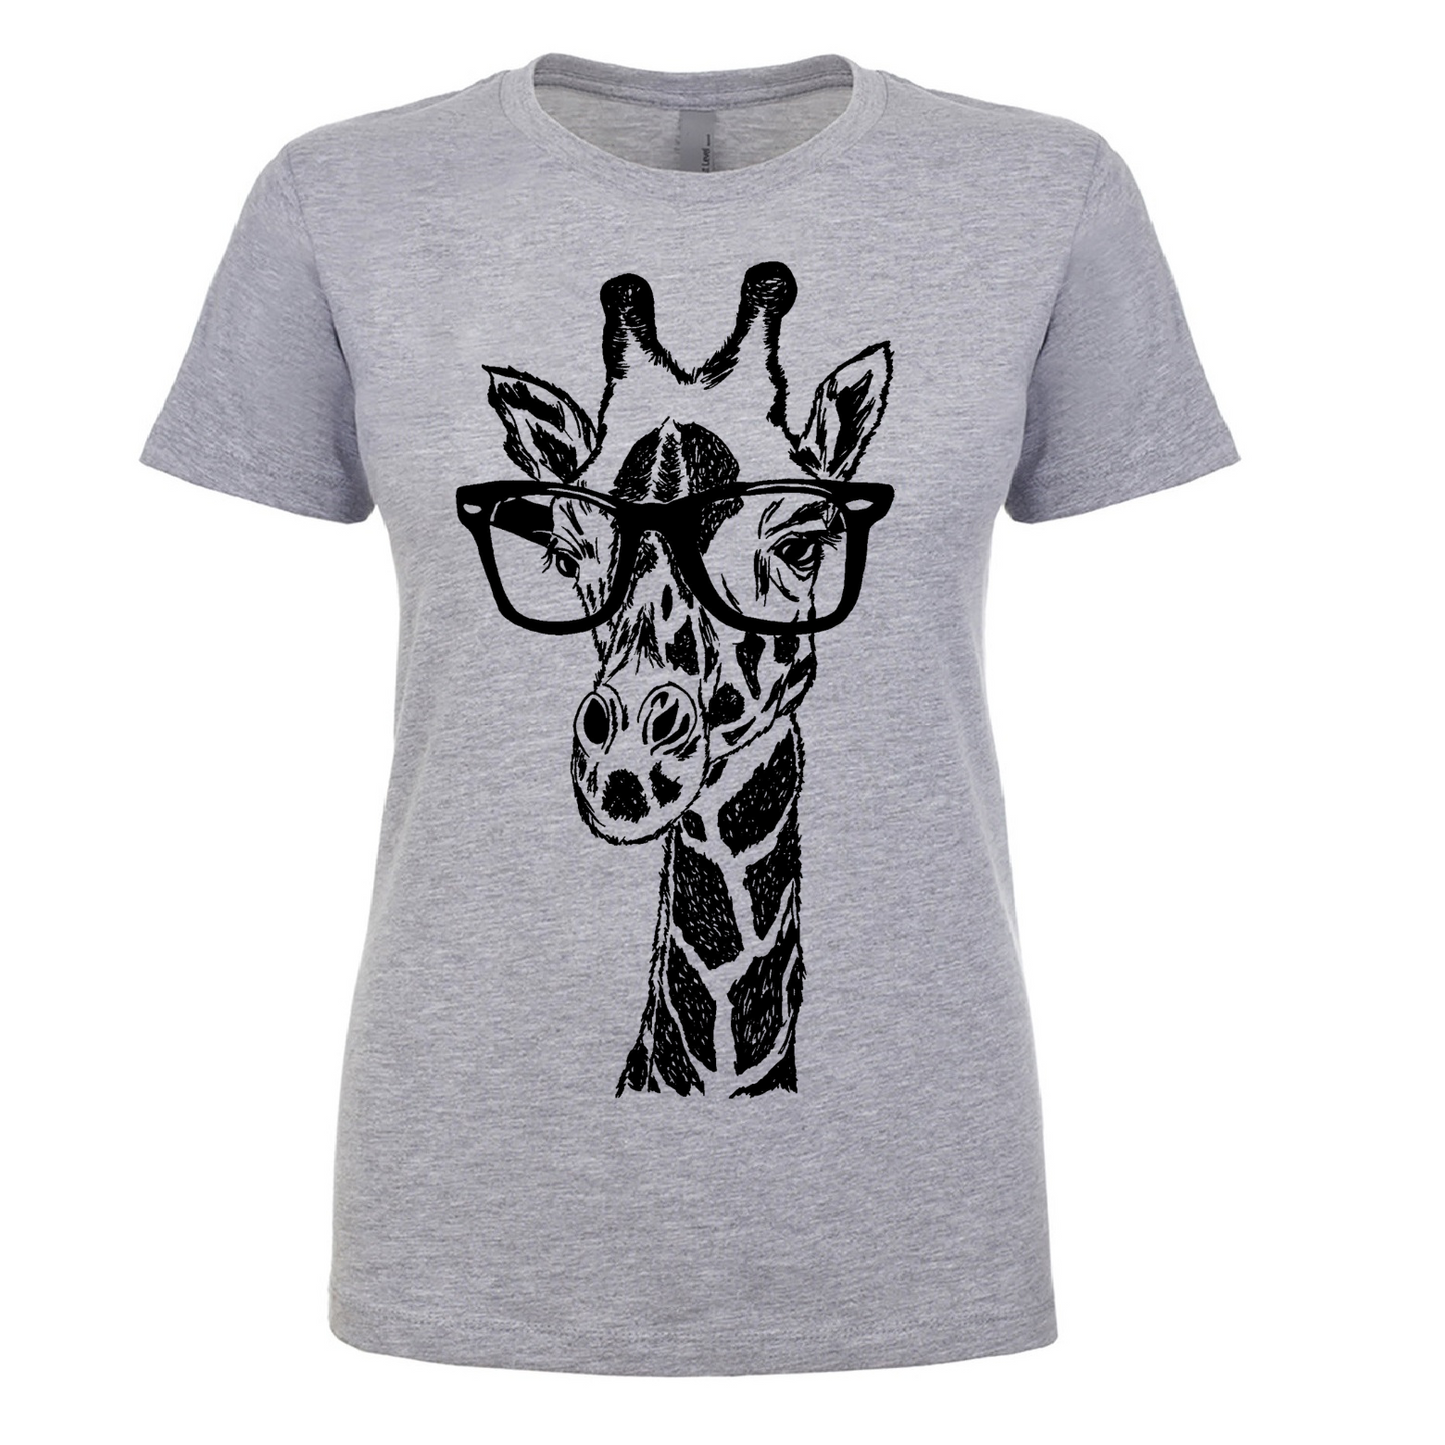 Giraffe Wearing Glasses Ladies T Shirt